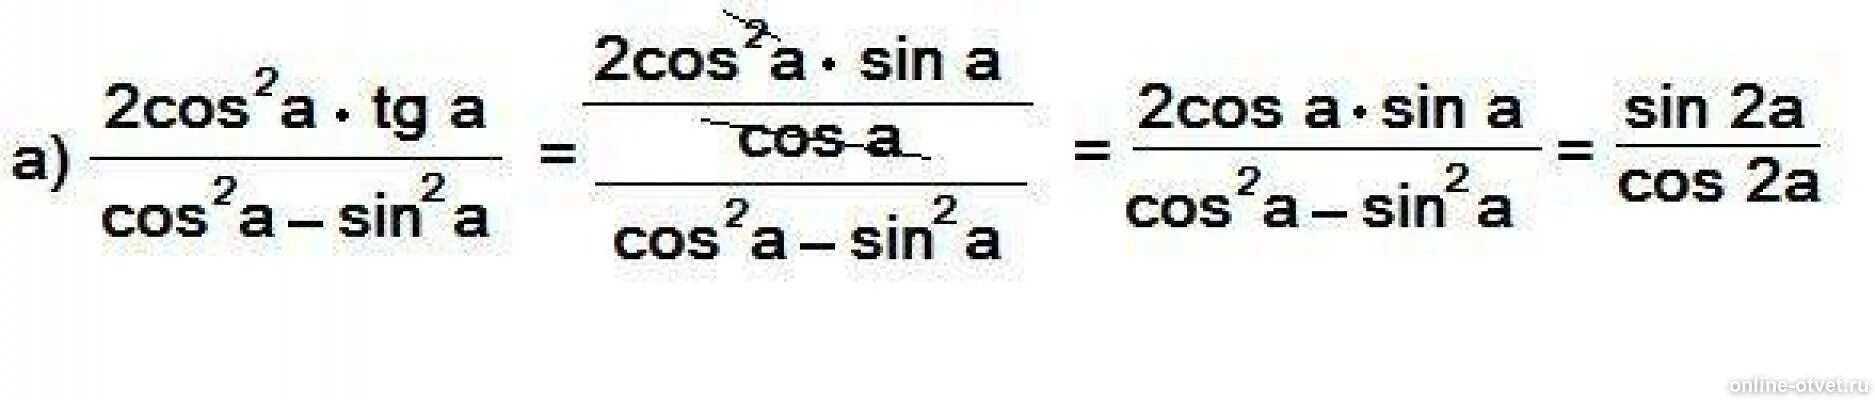 Cos a b cos a b упростить выражение. Упростить выражение sin b/cos b - sin b. Cos2a. 1-Cos2a формула. Vi cos